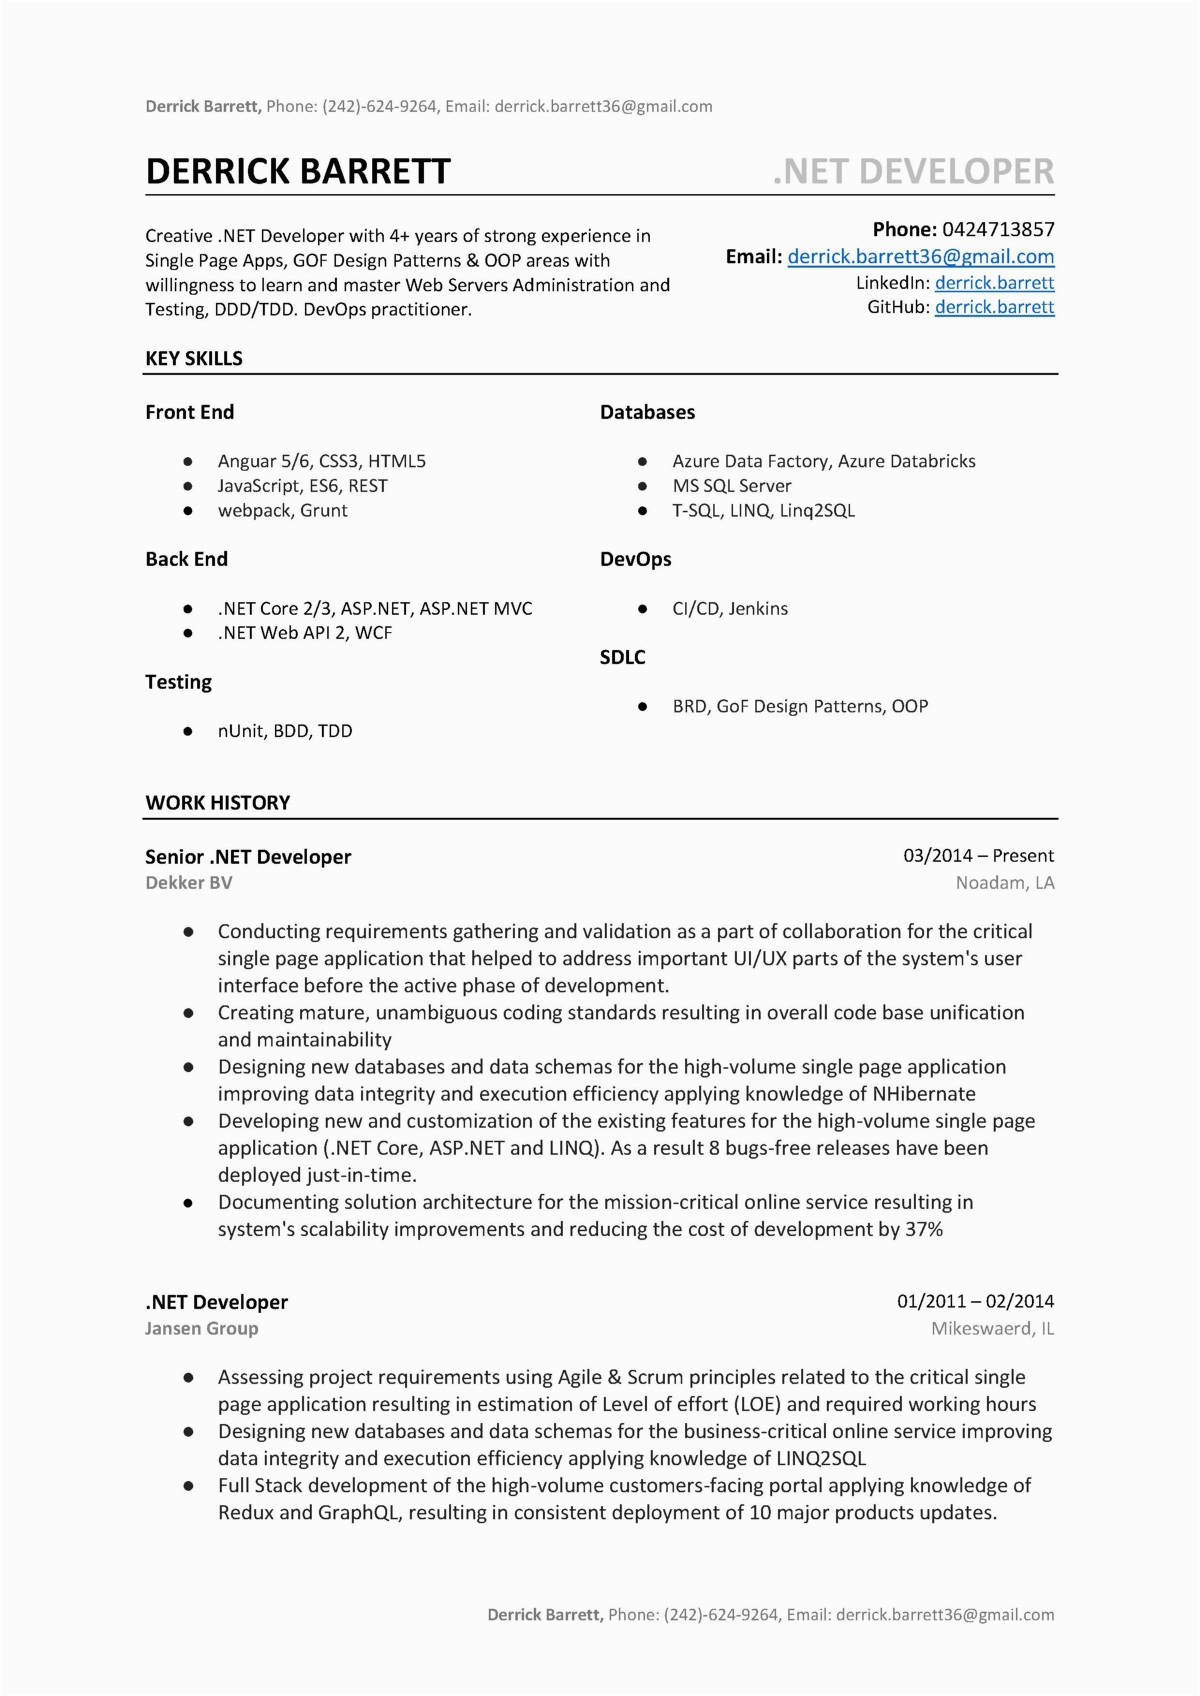 Sample Resume for Dot Net Developer Experience 3 Years Net Developer Resume Sample & Template Word Pdf